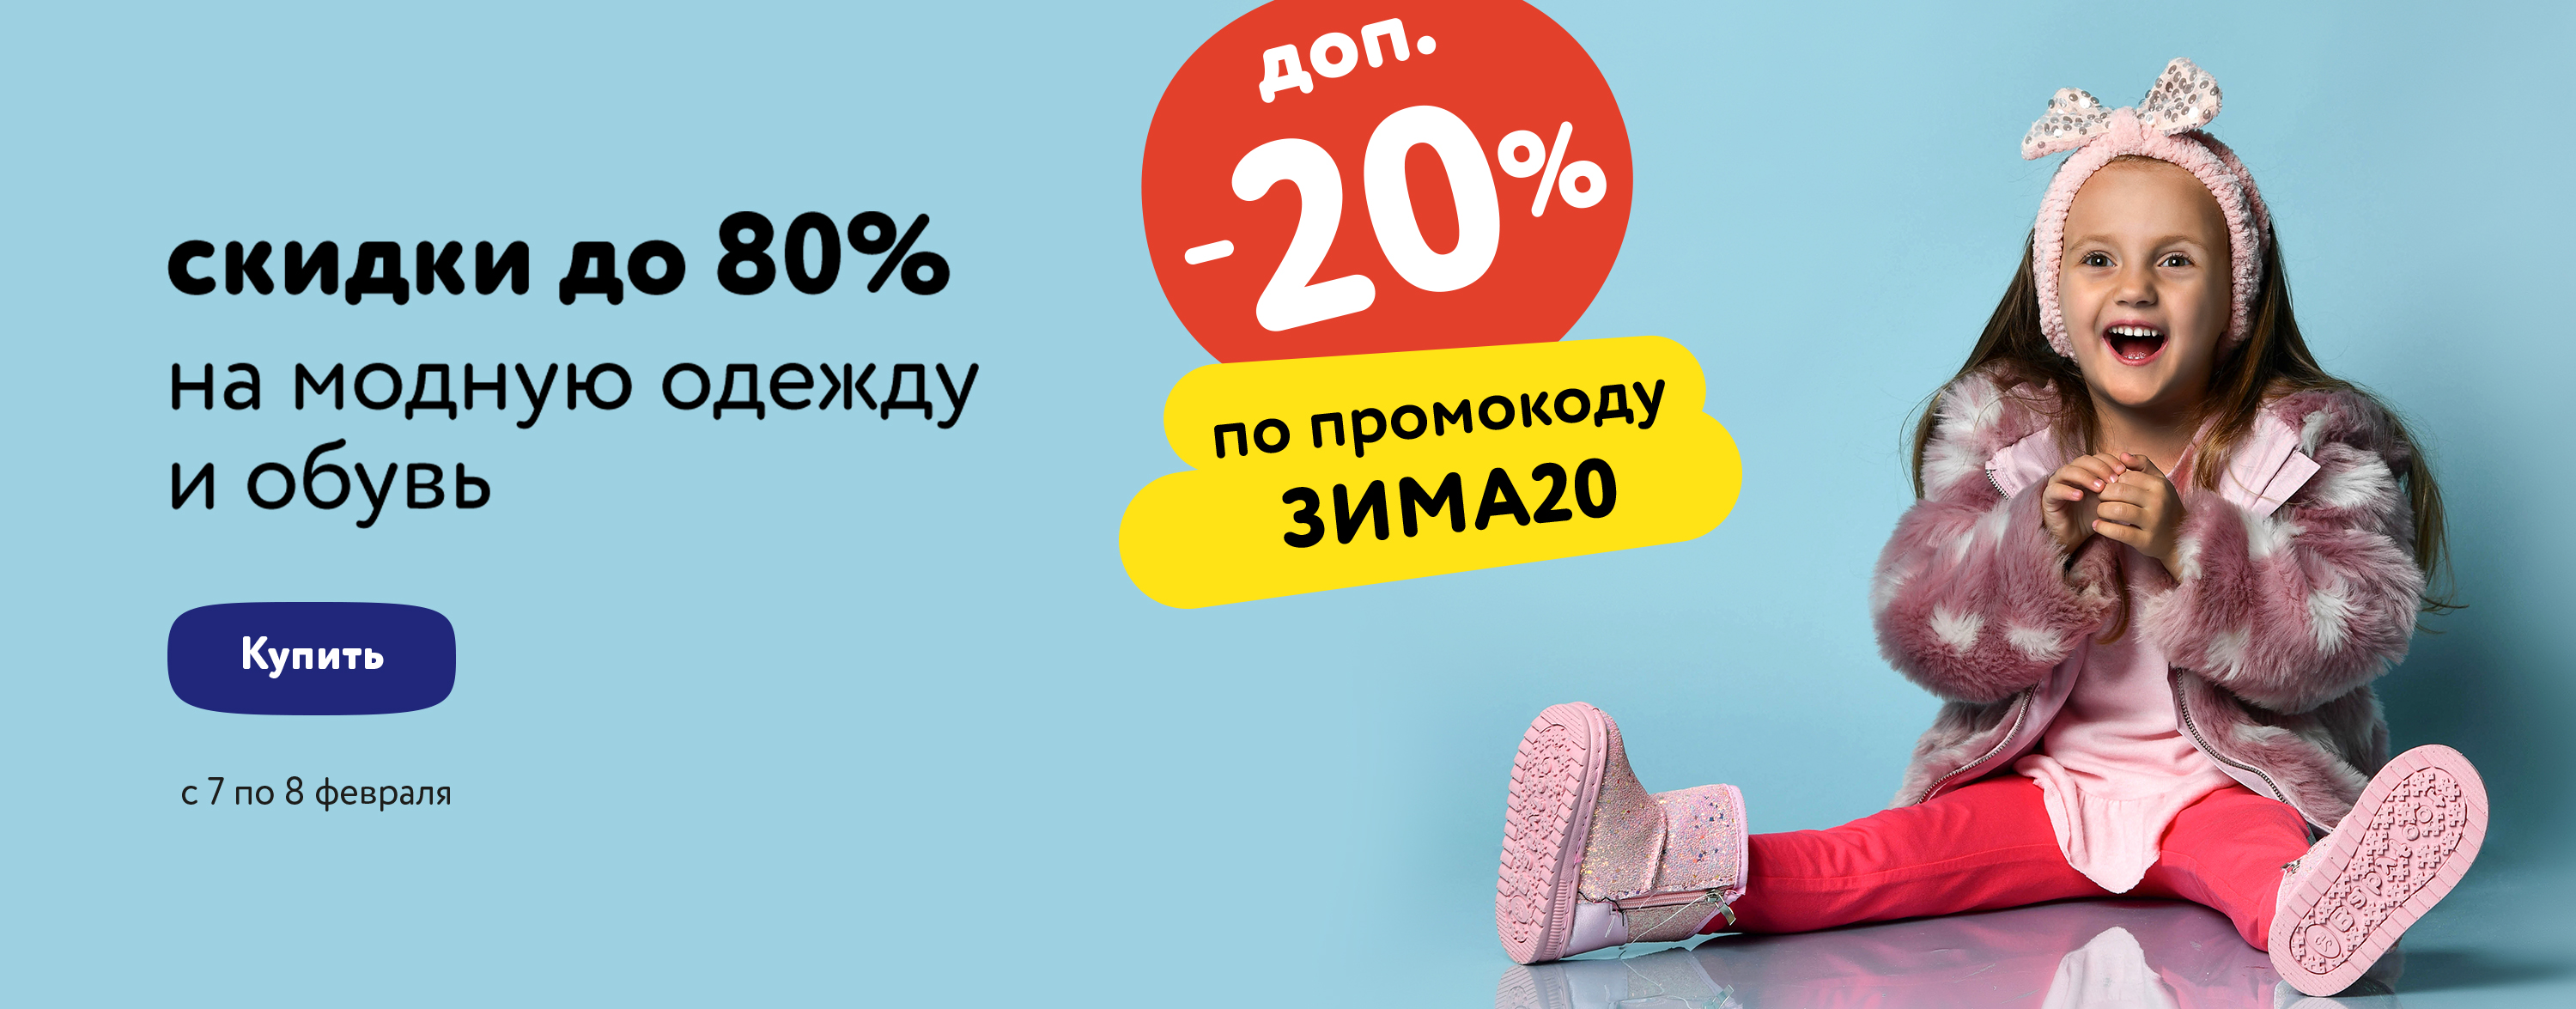 Доп. скидка 20% по промокоду на детскую одежду и обувь (ЗИМА20)